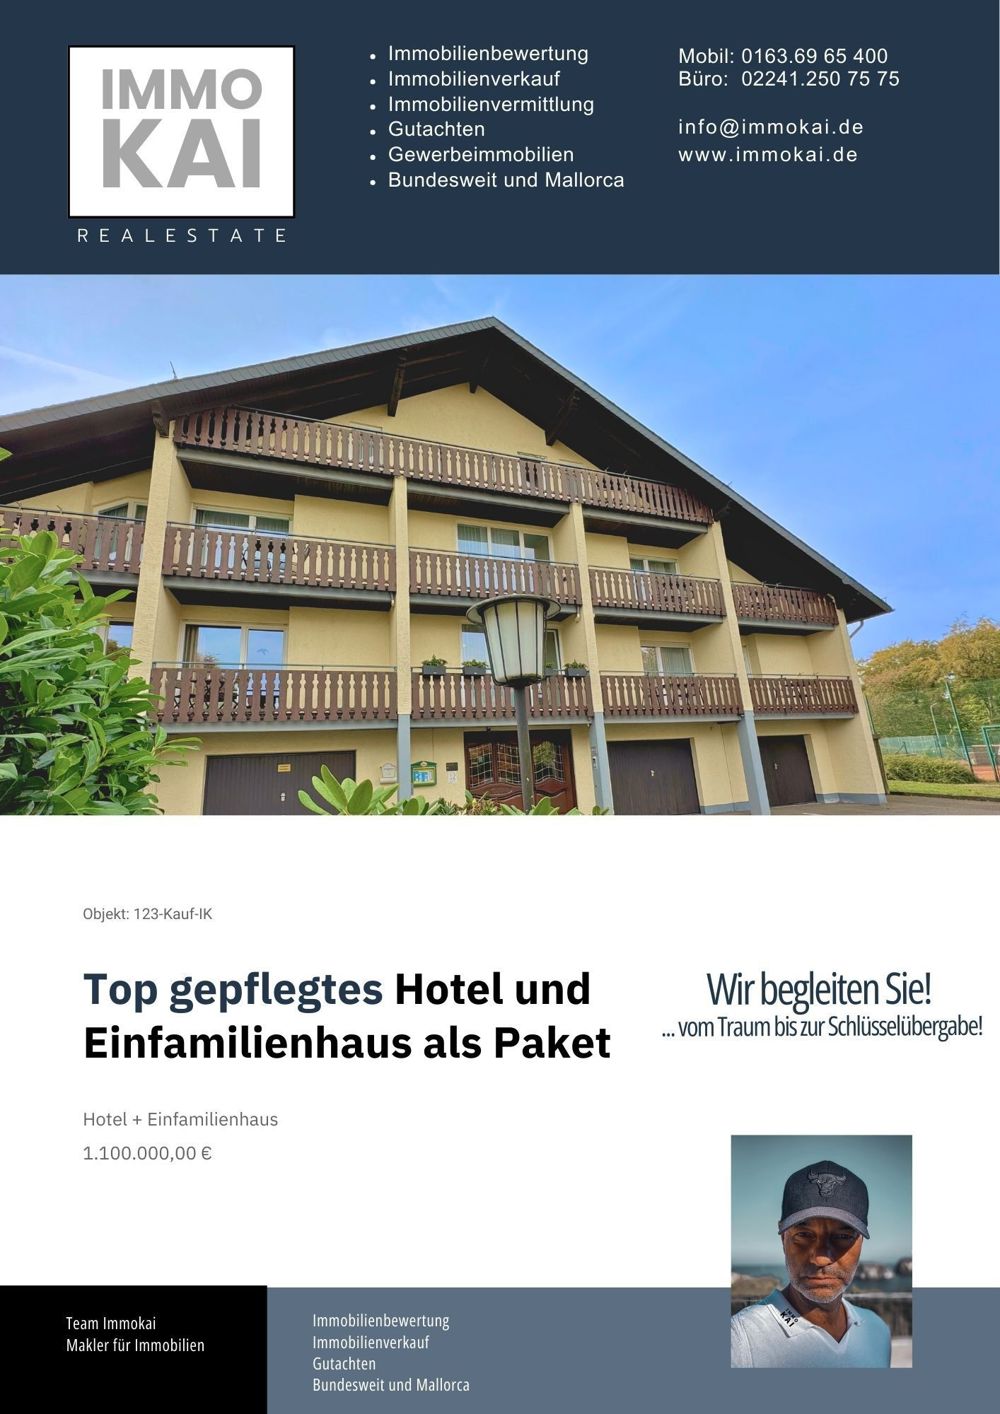 Top Angebot - 3 Sterne Hotel + EFH im schönen Hunsrück zwischen Boppard und Kastellauen